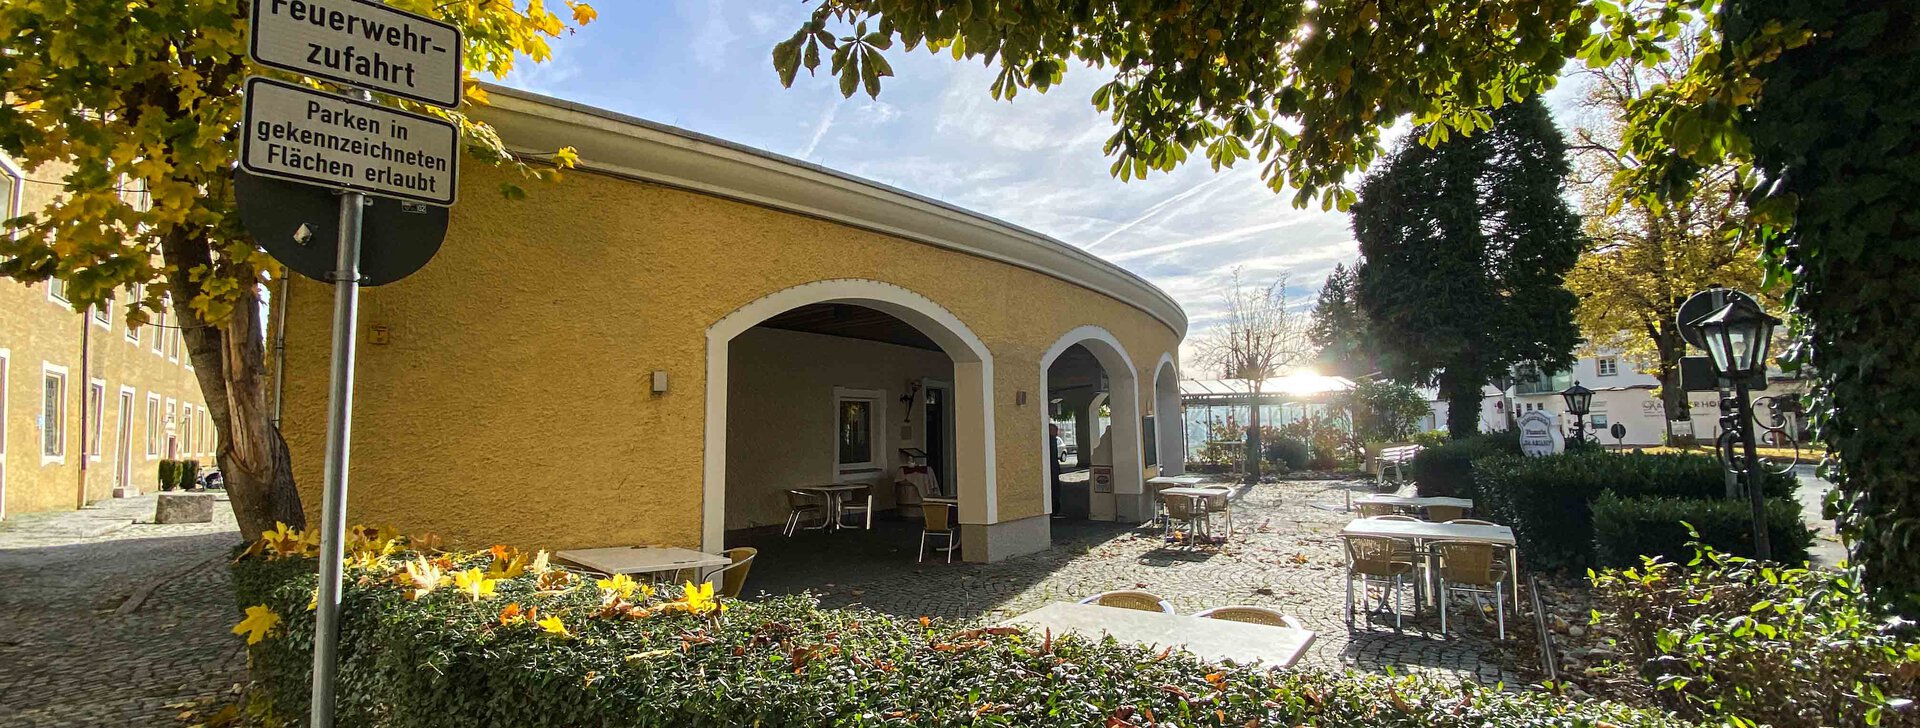 Gästeterrasse, Gewerbeeinheit in Laufen, Immobilie kaufen, Laufen | © HausBauHaus GmbH 